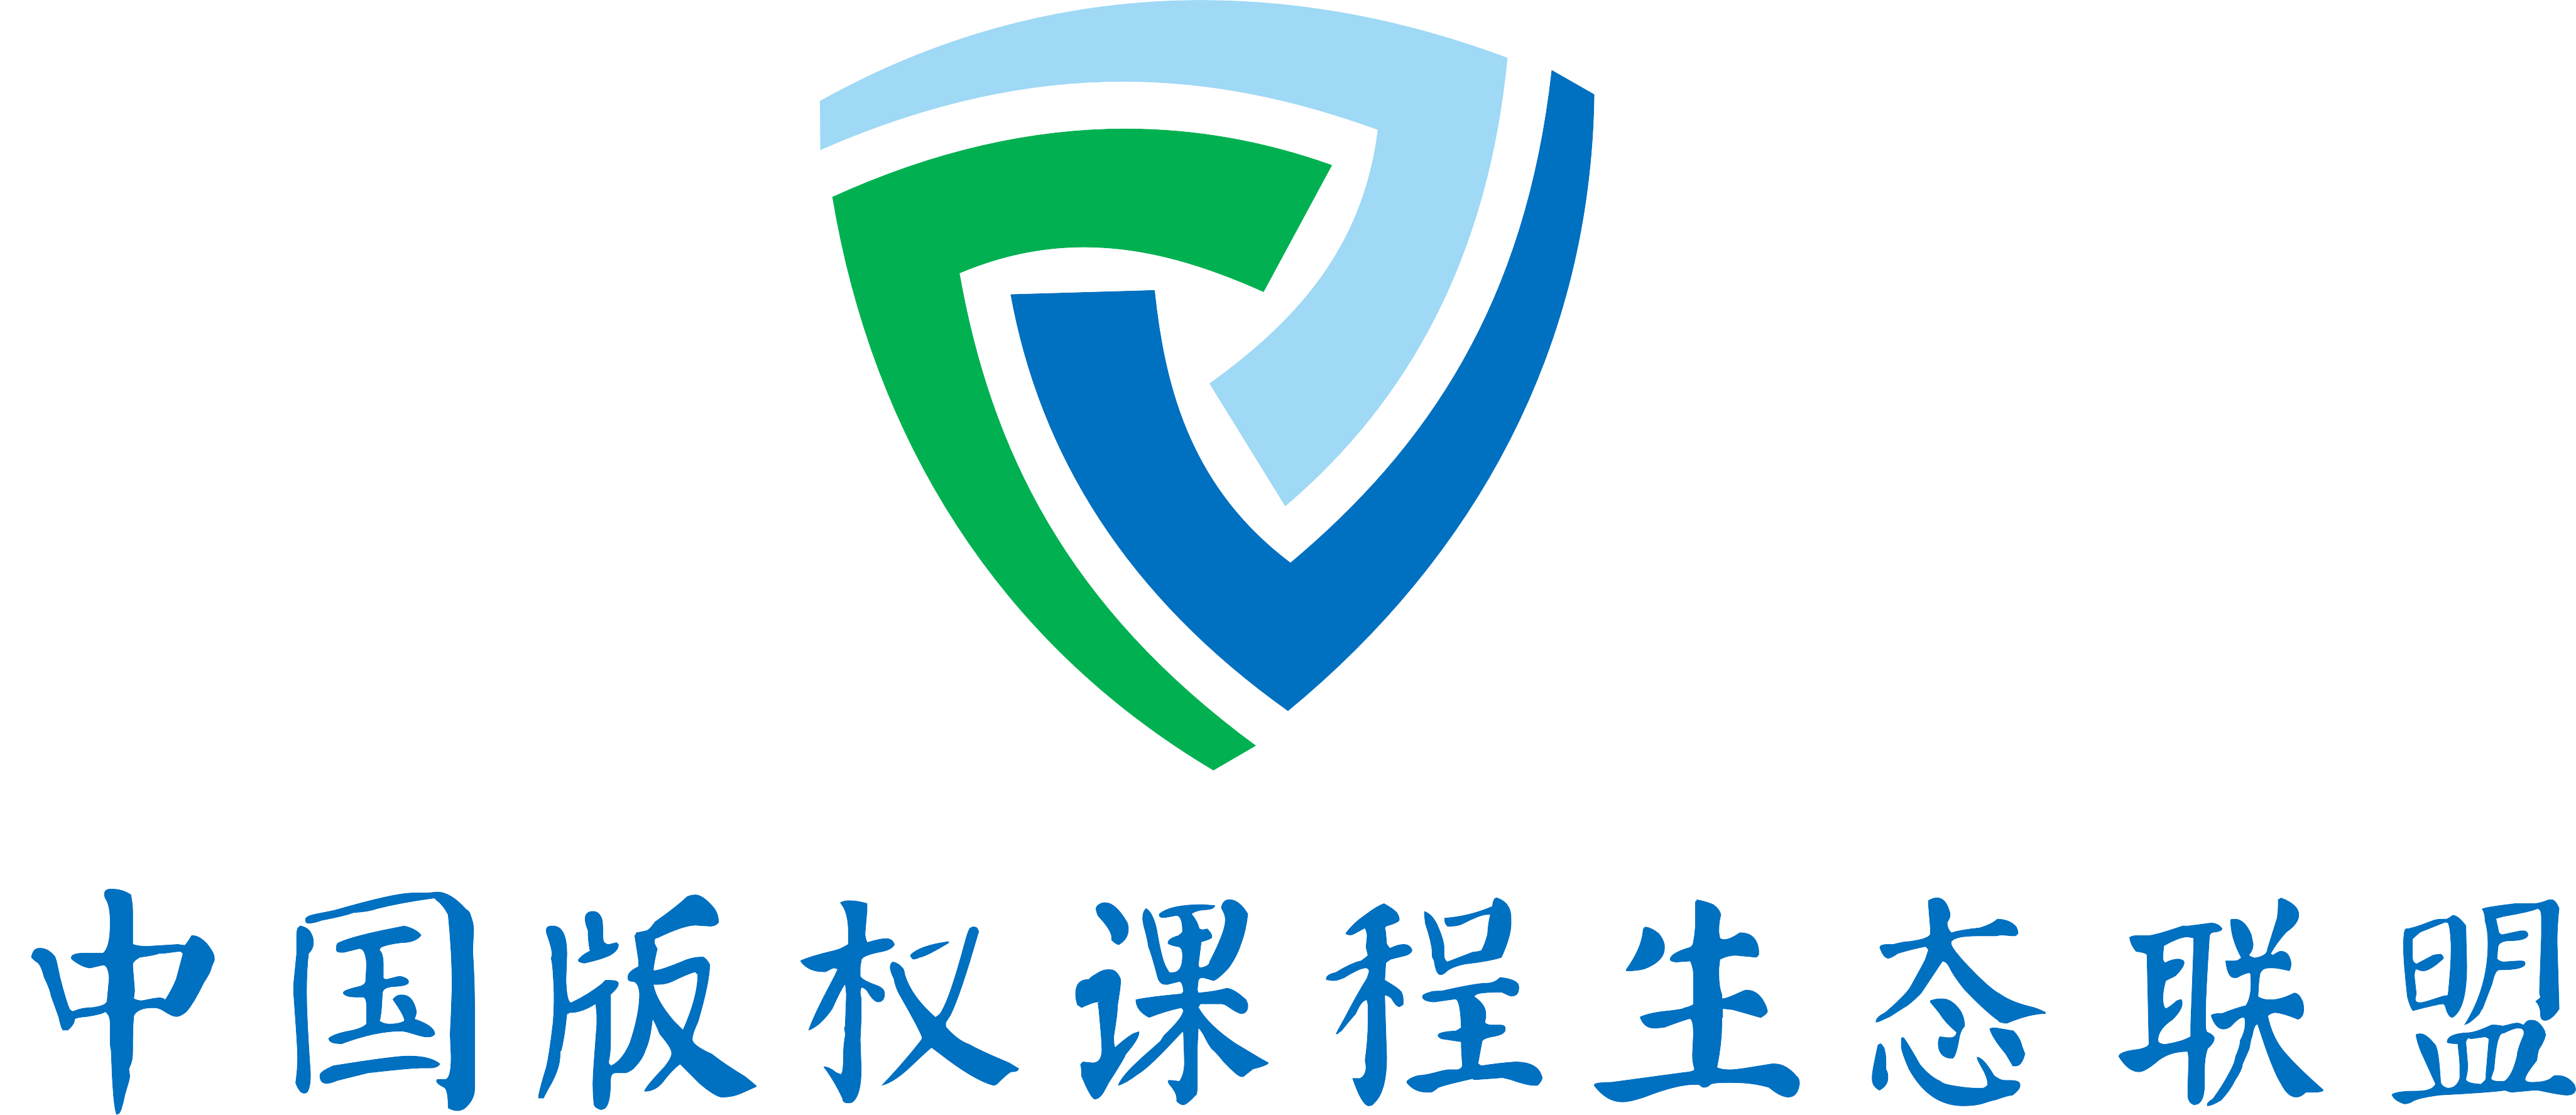 中国版权课程生态联盟.png